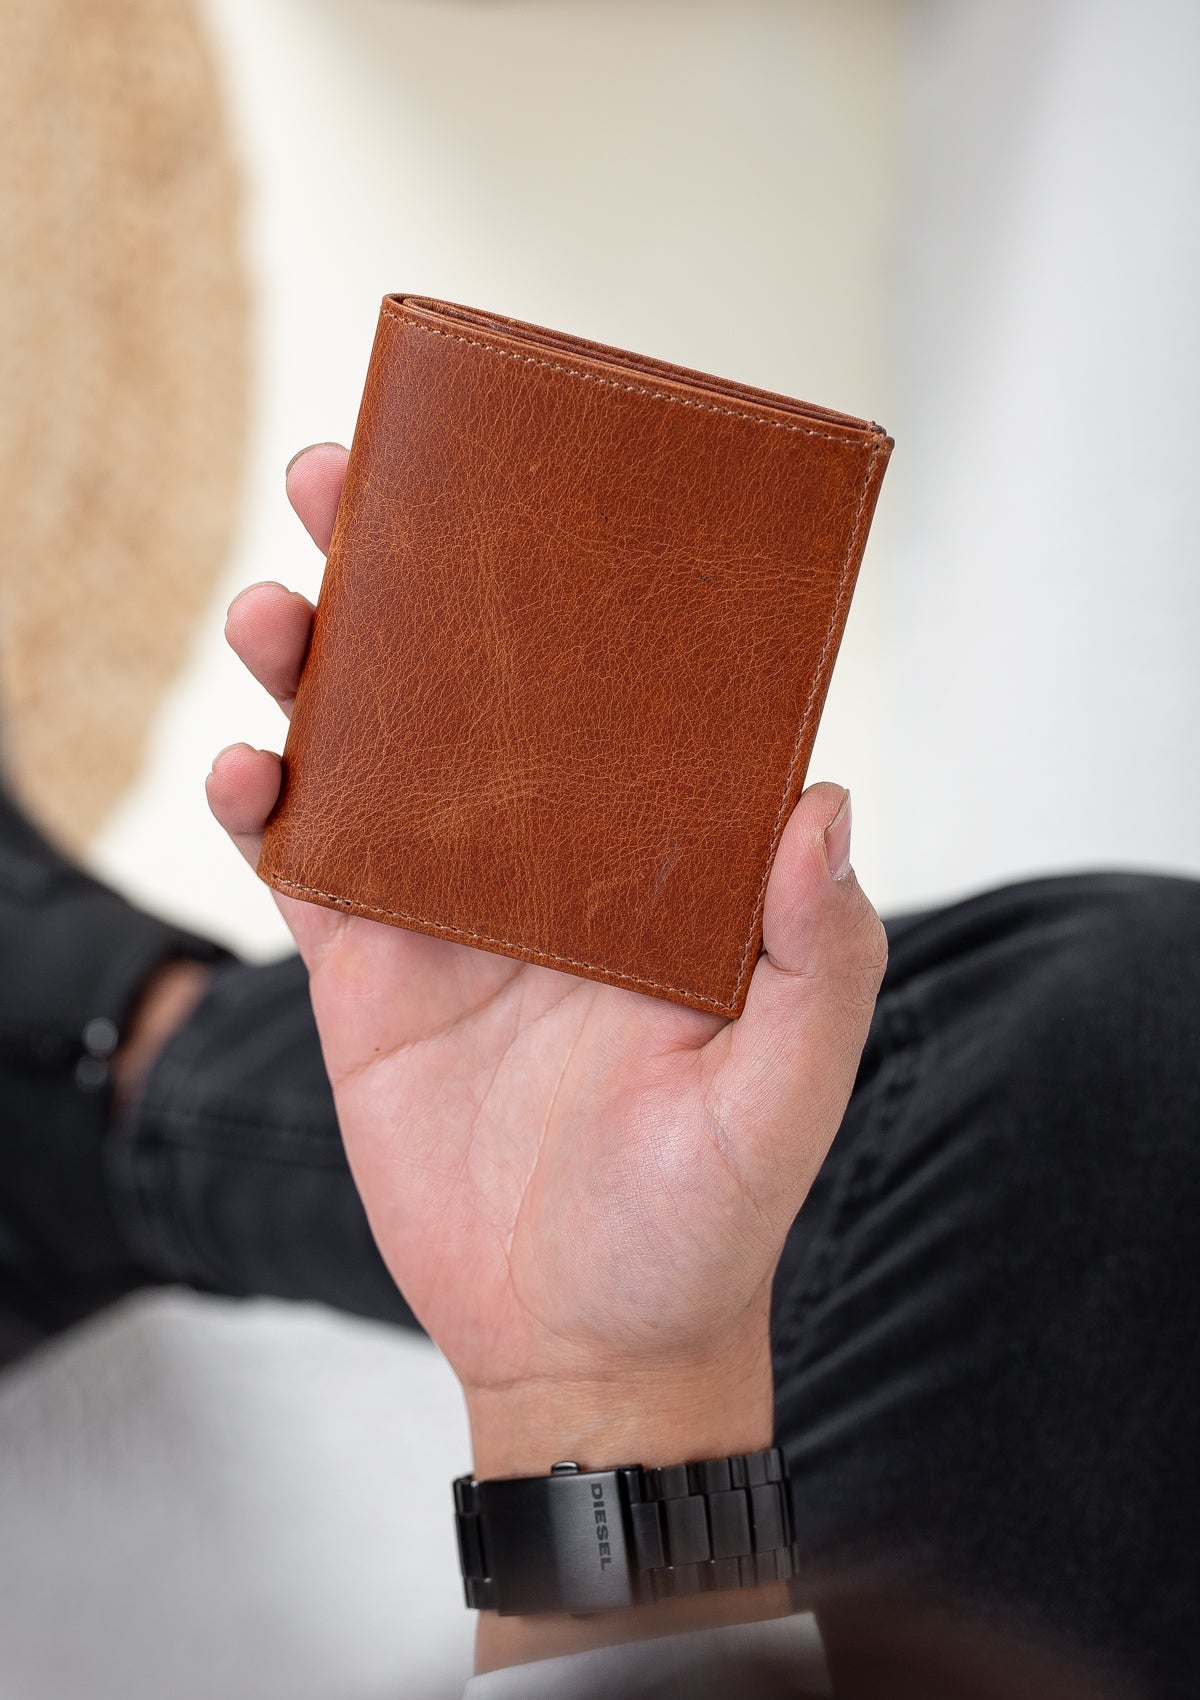 Niki Leather Sebra Vintage Leather Card Holder Wallet